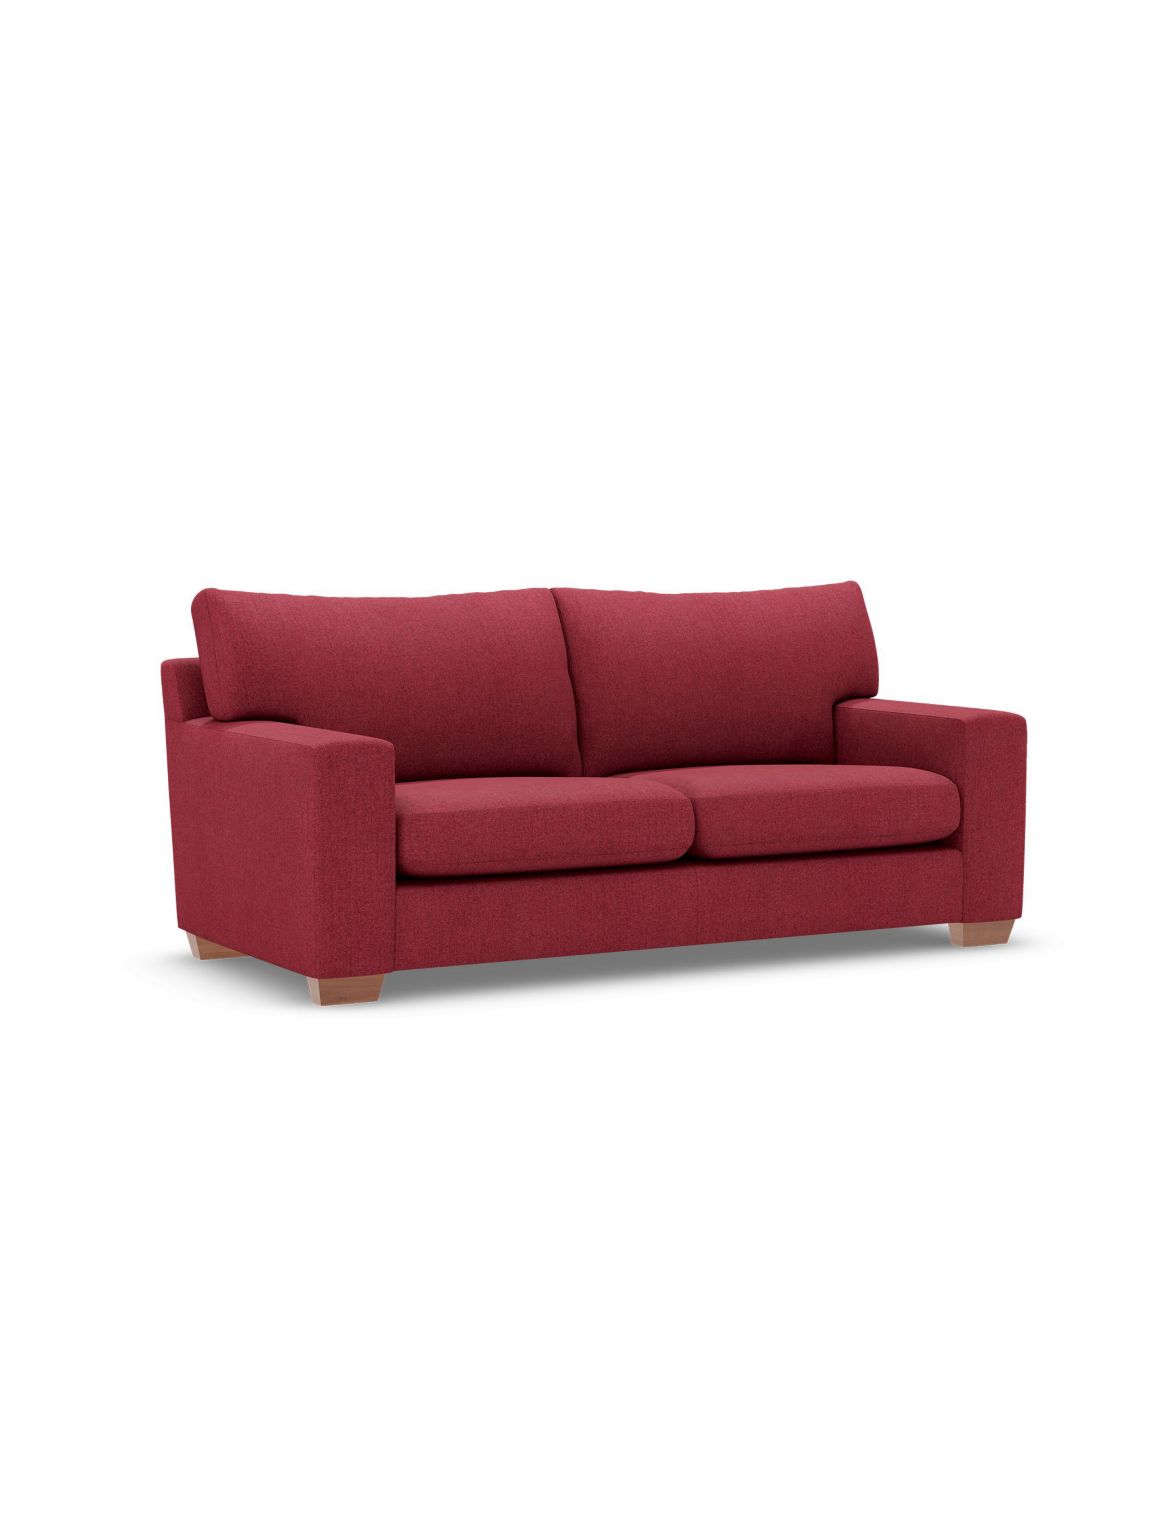 Alfie Medium Sofa red